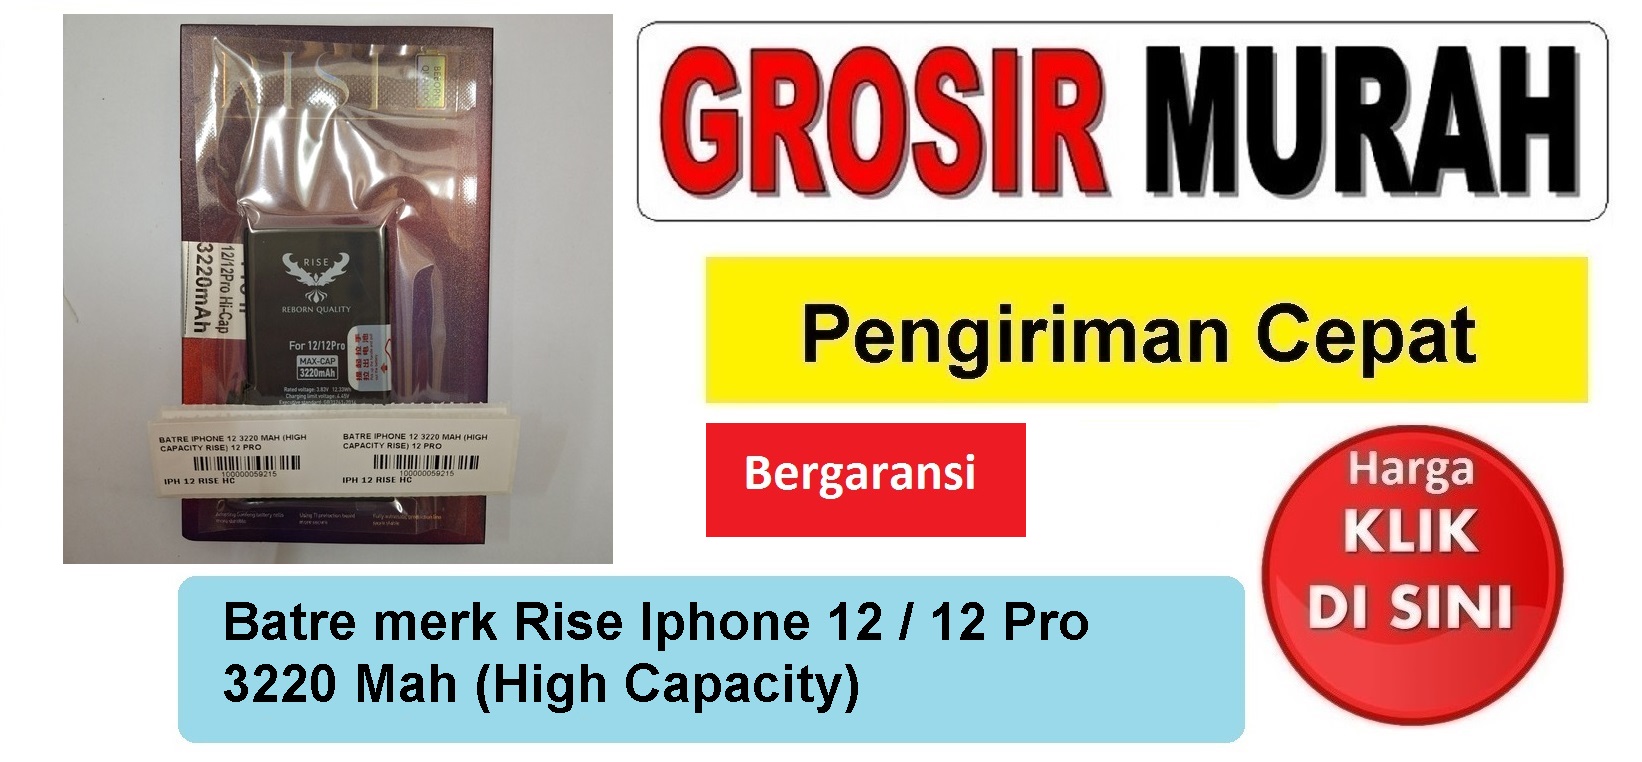 Batre merk Rise Iphone 12 3220 Mah iPhone 12 Pro (High Capacity) Baterai Battery Bergaransi Batere